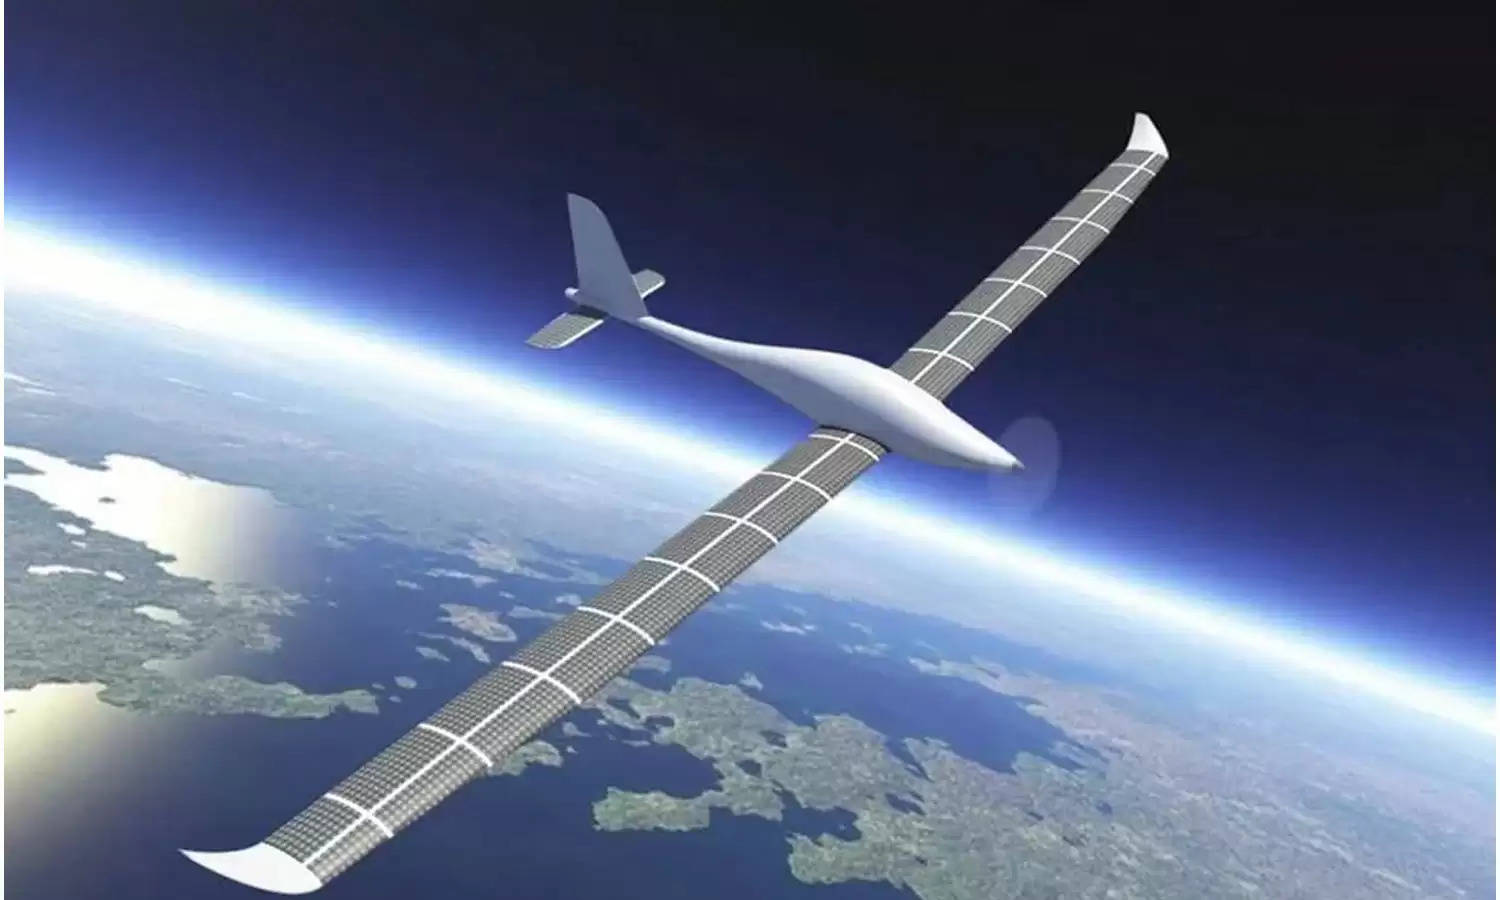 चीन का ये ड्रोन महीनों तक हवा में रहकर करेगा निगरानी, सैटेलाइट का भी करेगा काम